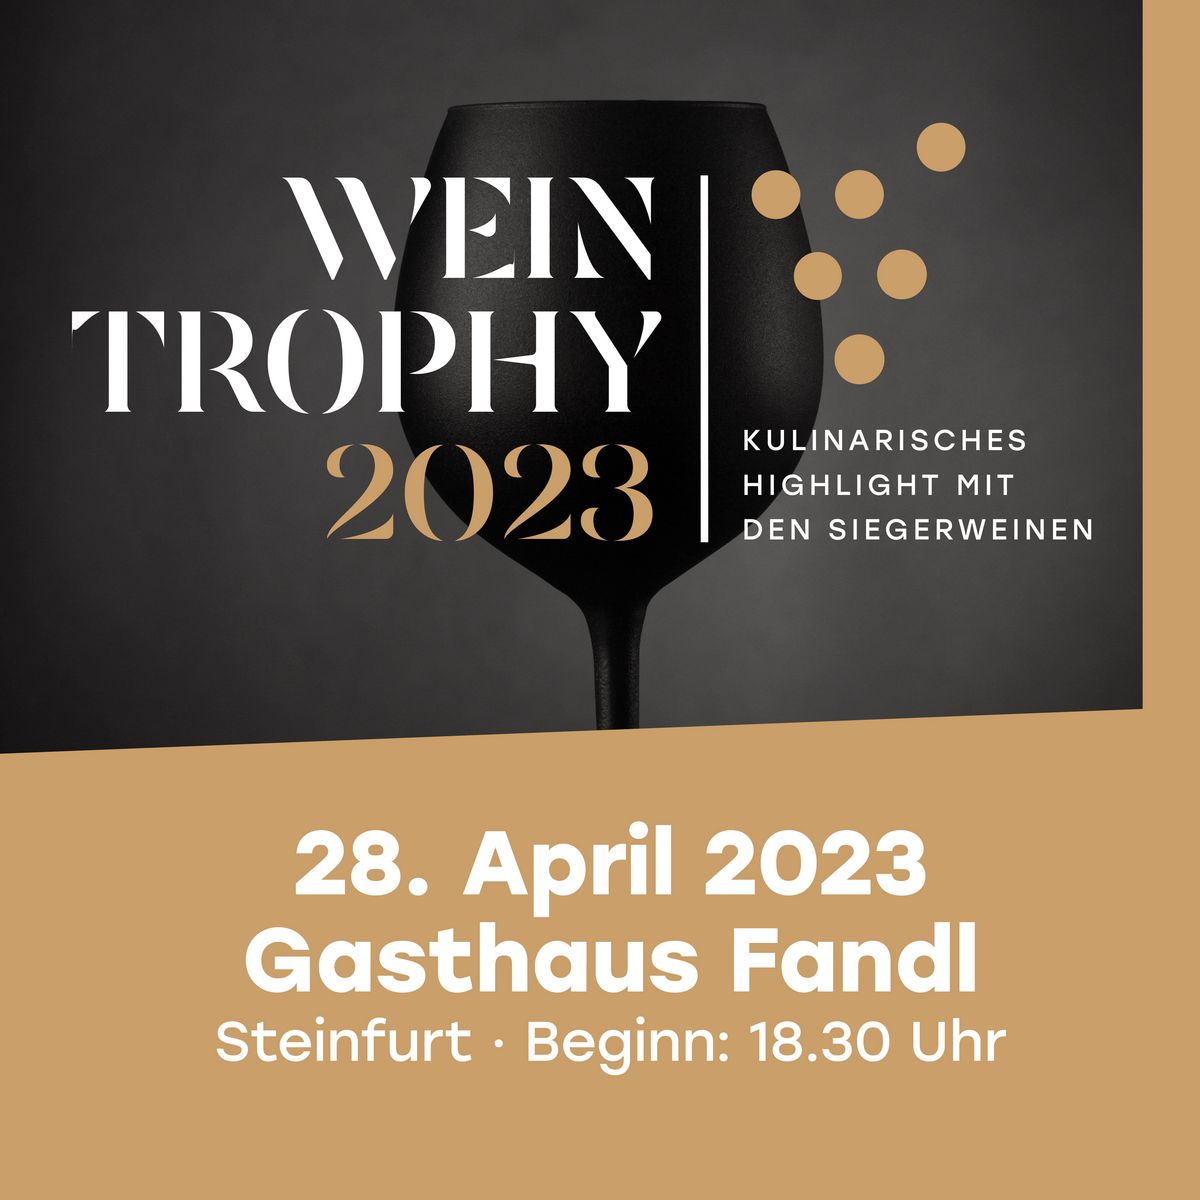 Wein Trophy 2023